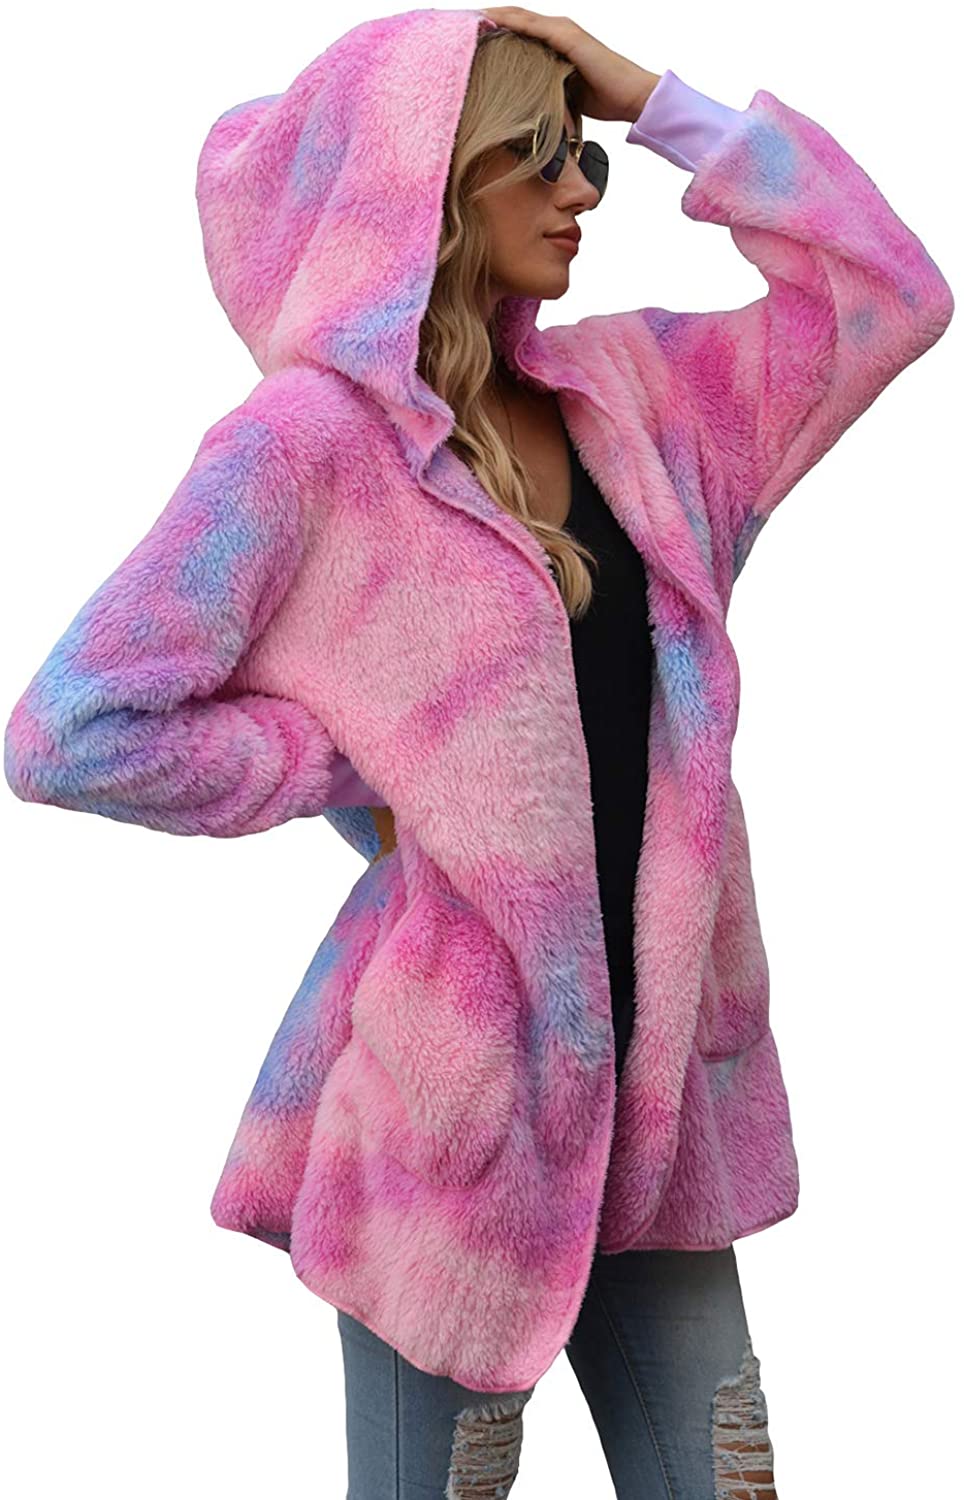 SENSERISE Womens Fuzzy Fleece Jacket Open Front Hooded Cardigan Coat Oversized Tie Dye Plaid Sherpa with Pockets 